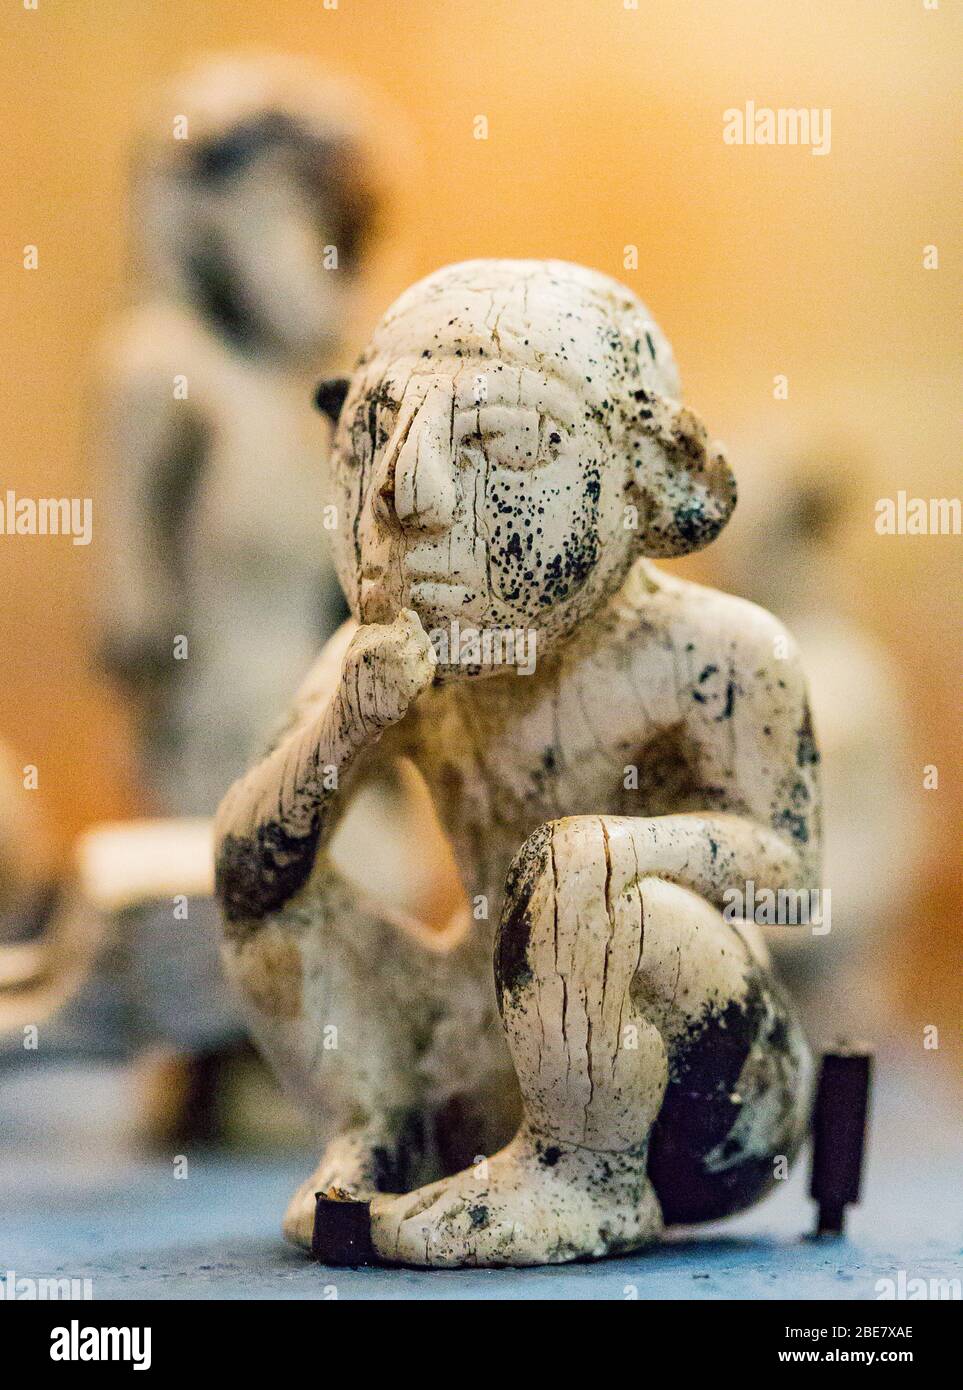 Egipto, el Cairo, Museo Egipcio, estatuilla procedente de Tell el Farkha, período Dynástico temprano, en tusk hipopótamo. Niño sentado. Foto de stock